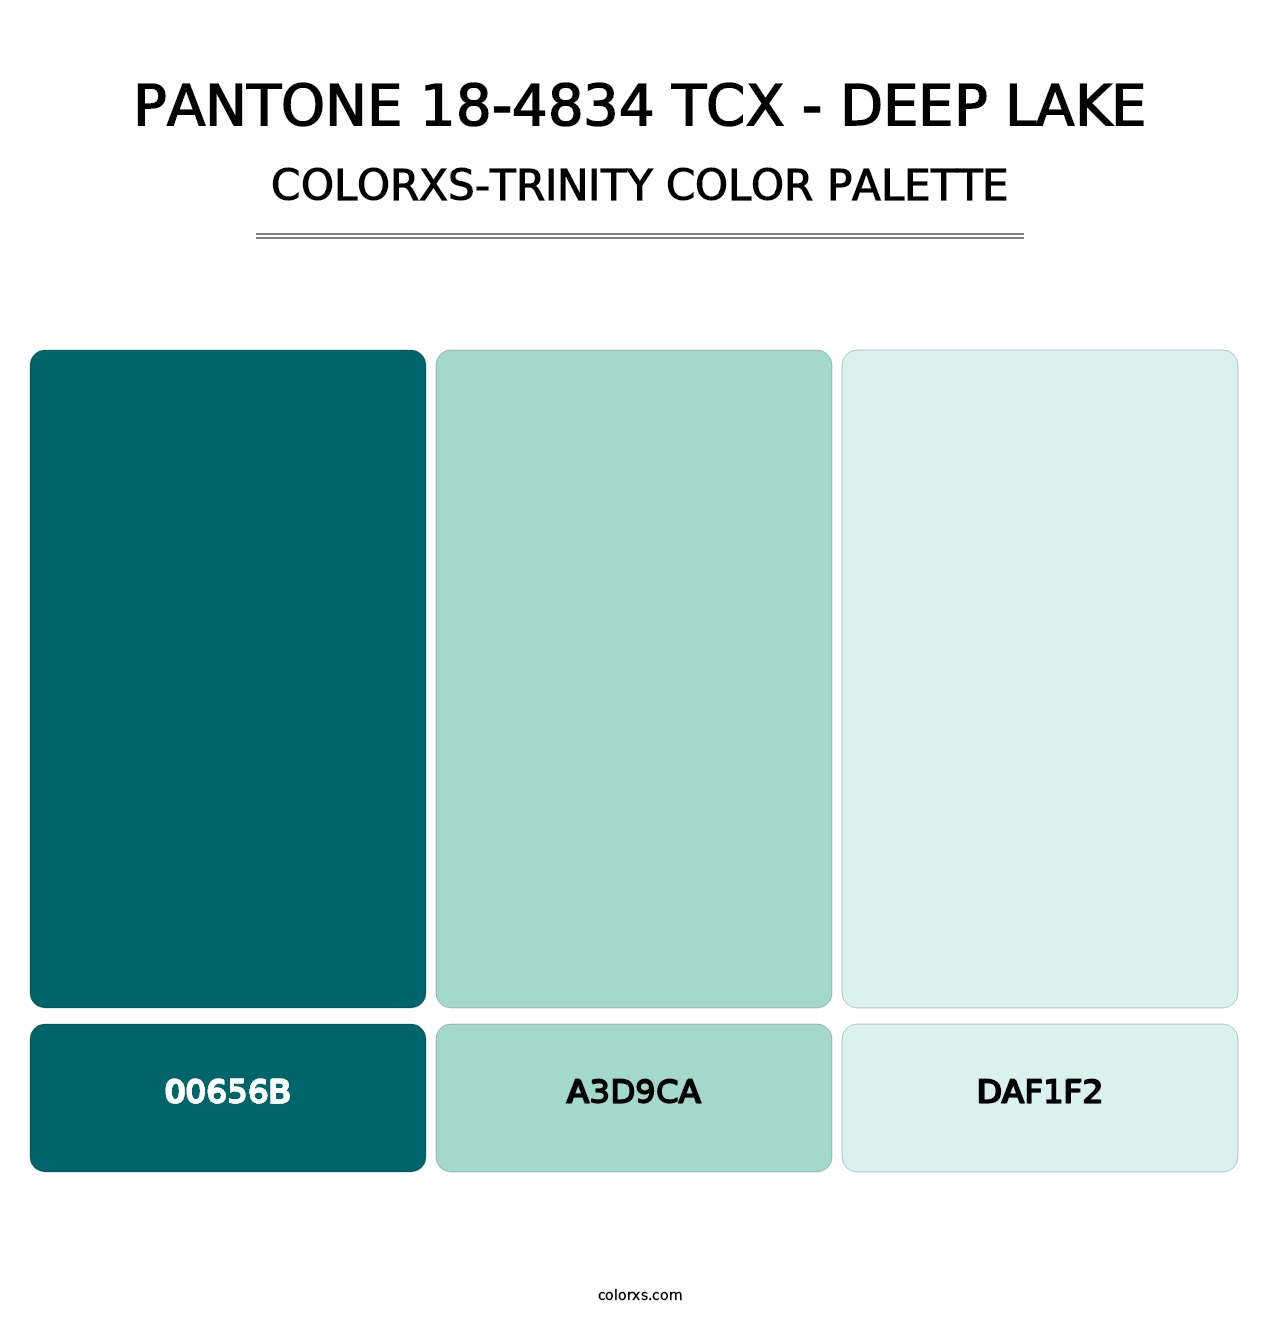 PANTONE 18-4834 TCX - Deep Lake - Colorxs Trinity Palette